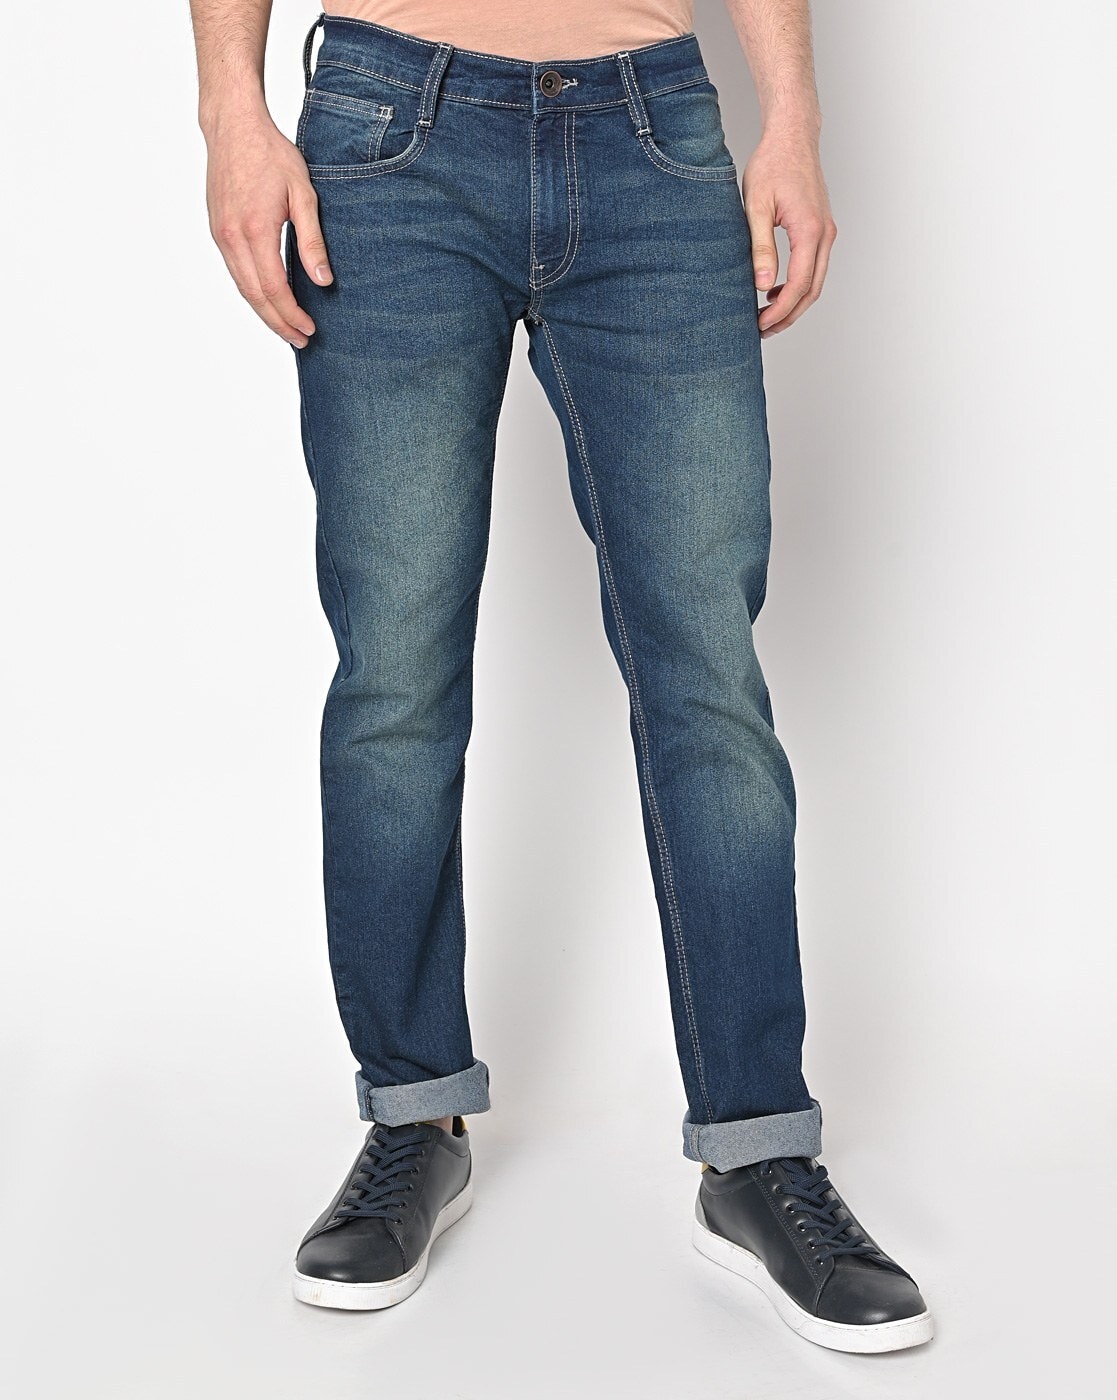 Buy Blue Jeans for Men Jeans Ajio.com